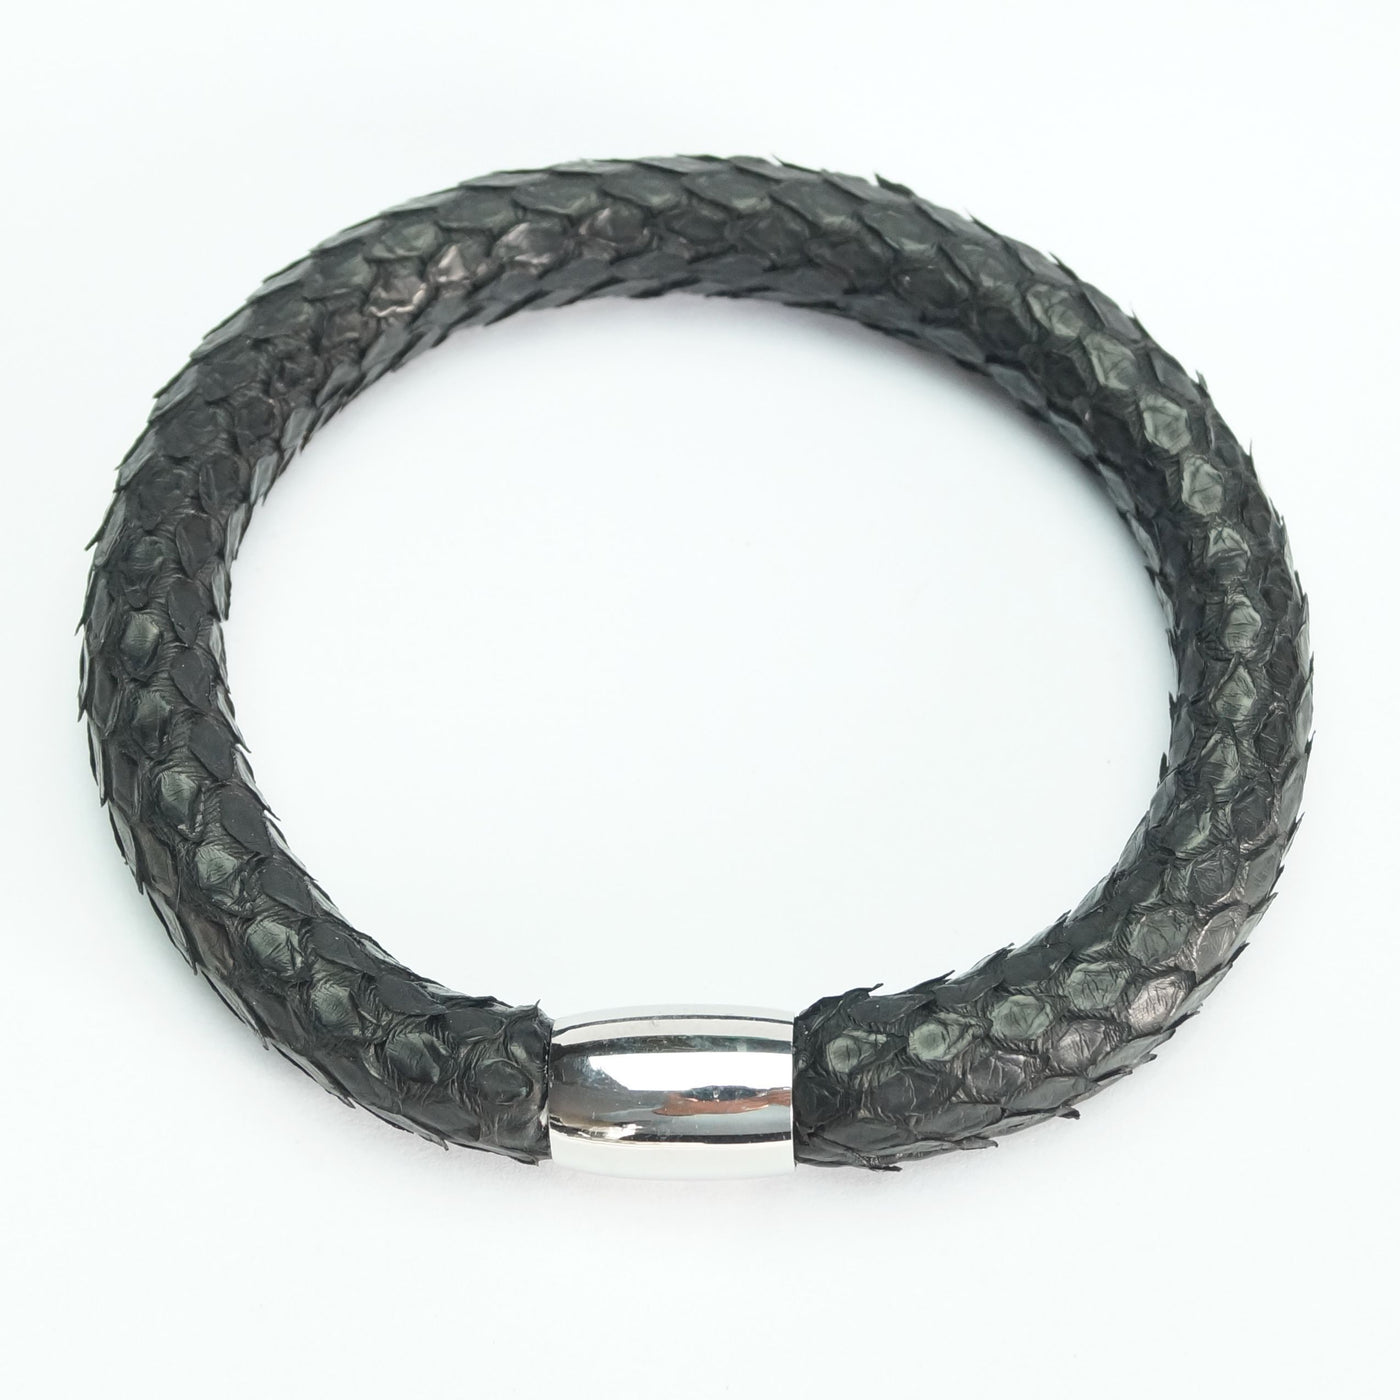 Phyton - Sort Slangeskinds Armbånd - Smykke fra The Leather Belt Co. hos The Prince Webshop